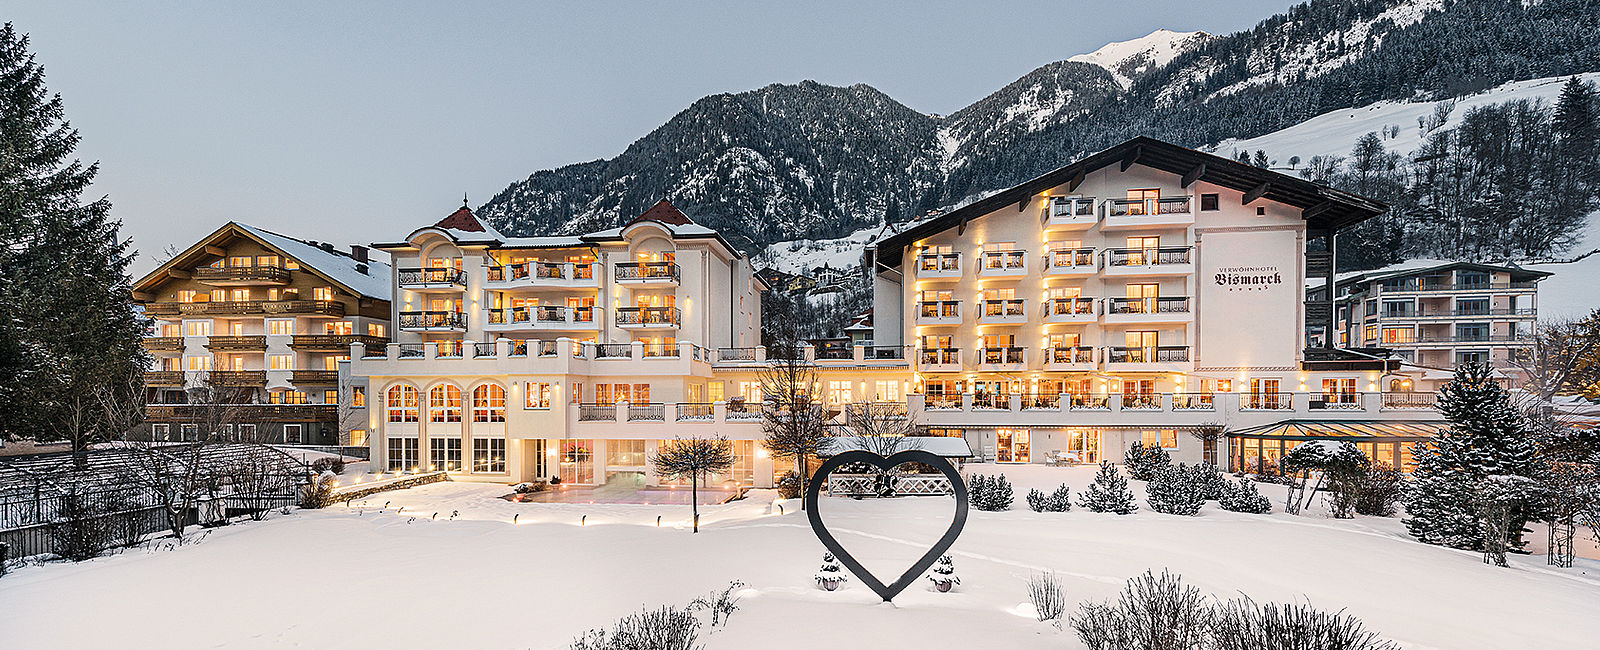 VERY SPECIAL HOTEL
 Verwoehnhotel Bismarck, Salzburg 
 Ski-, Thermal- und Gourmetgenuss 